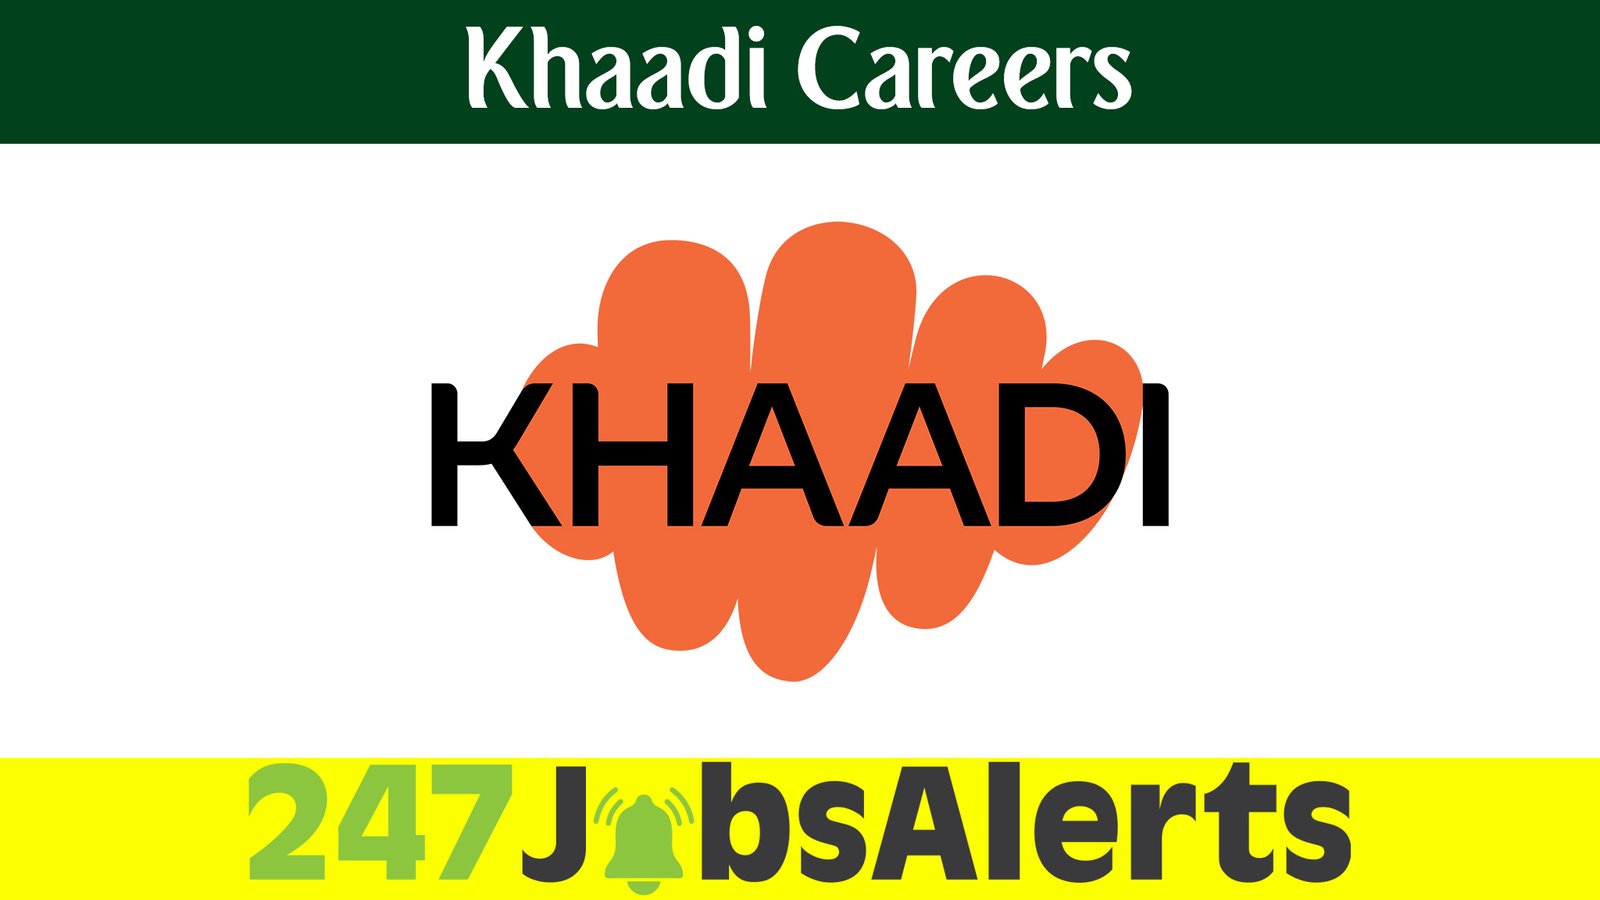 Khaadi Careers